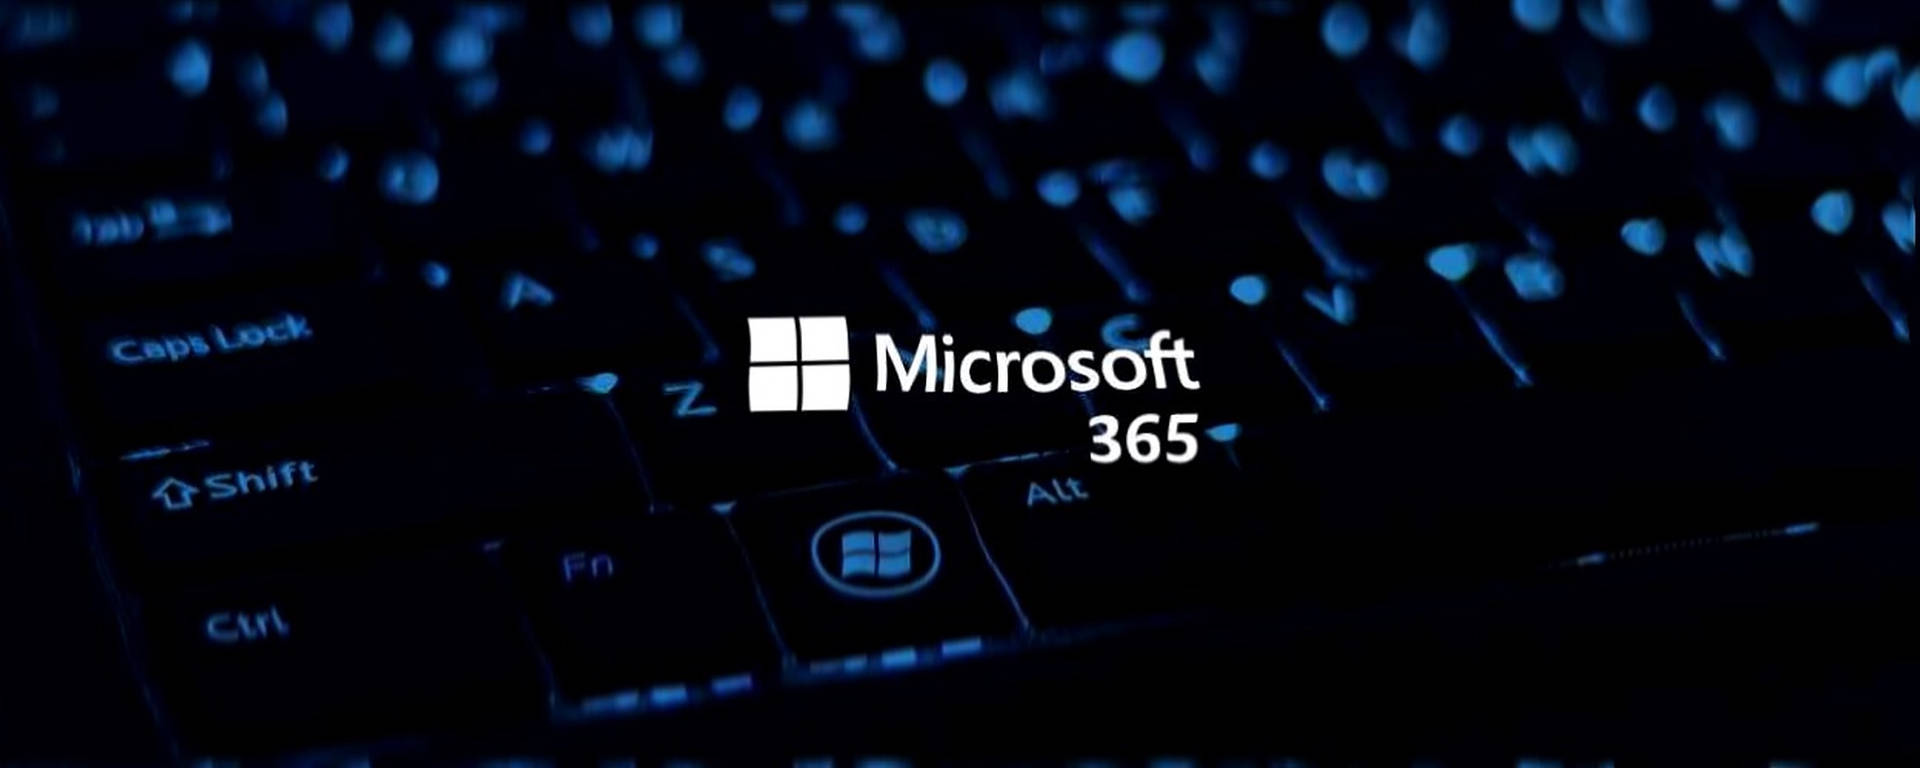 Microsoft Office 365 Keyboard Wallpaper